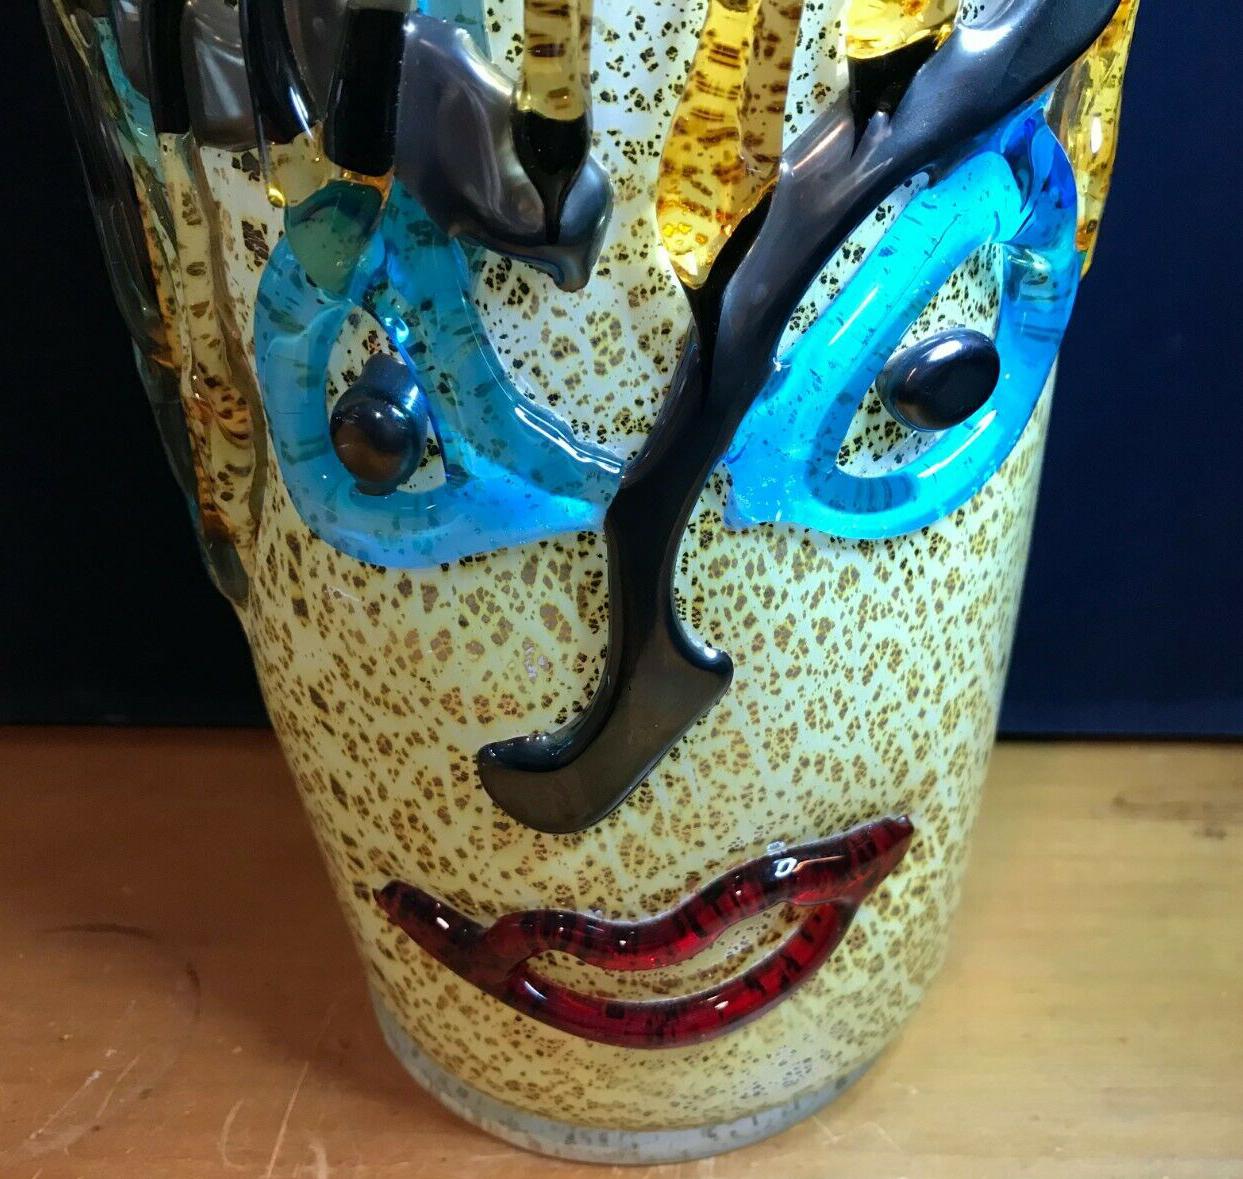 Grand vase en verre d'art de Murano à visage flamboyant, signé par Sergio Constantini. Un verre d'art de qualité supérieure avec un affichage étonnant de réflexion multicolore lorsque la lumière frappe le verre. Par exemple, la couleur peut sembler